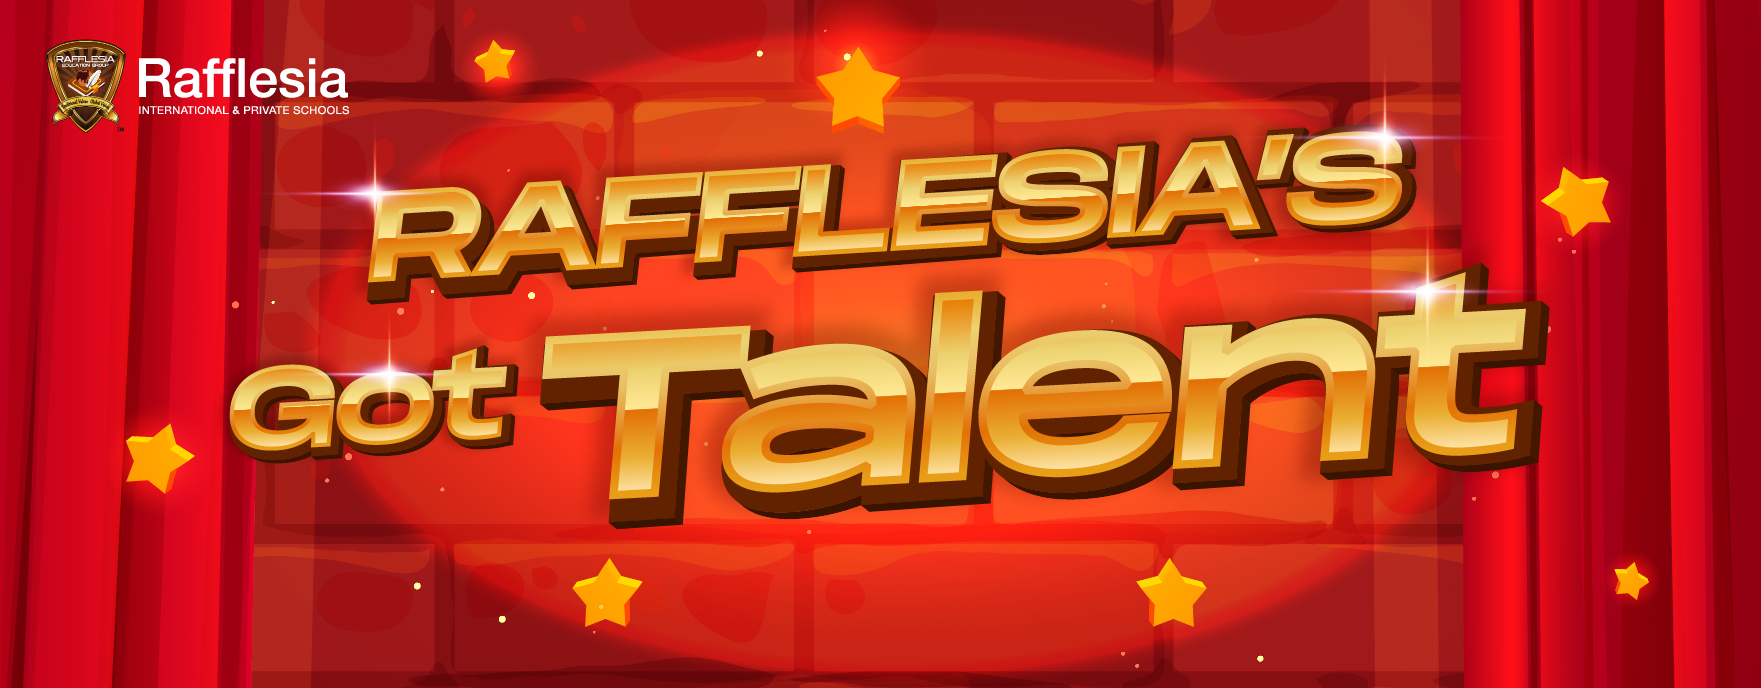 Rafflesia’s Got Talent